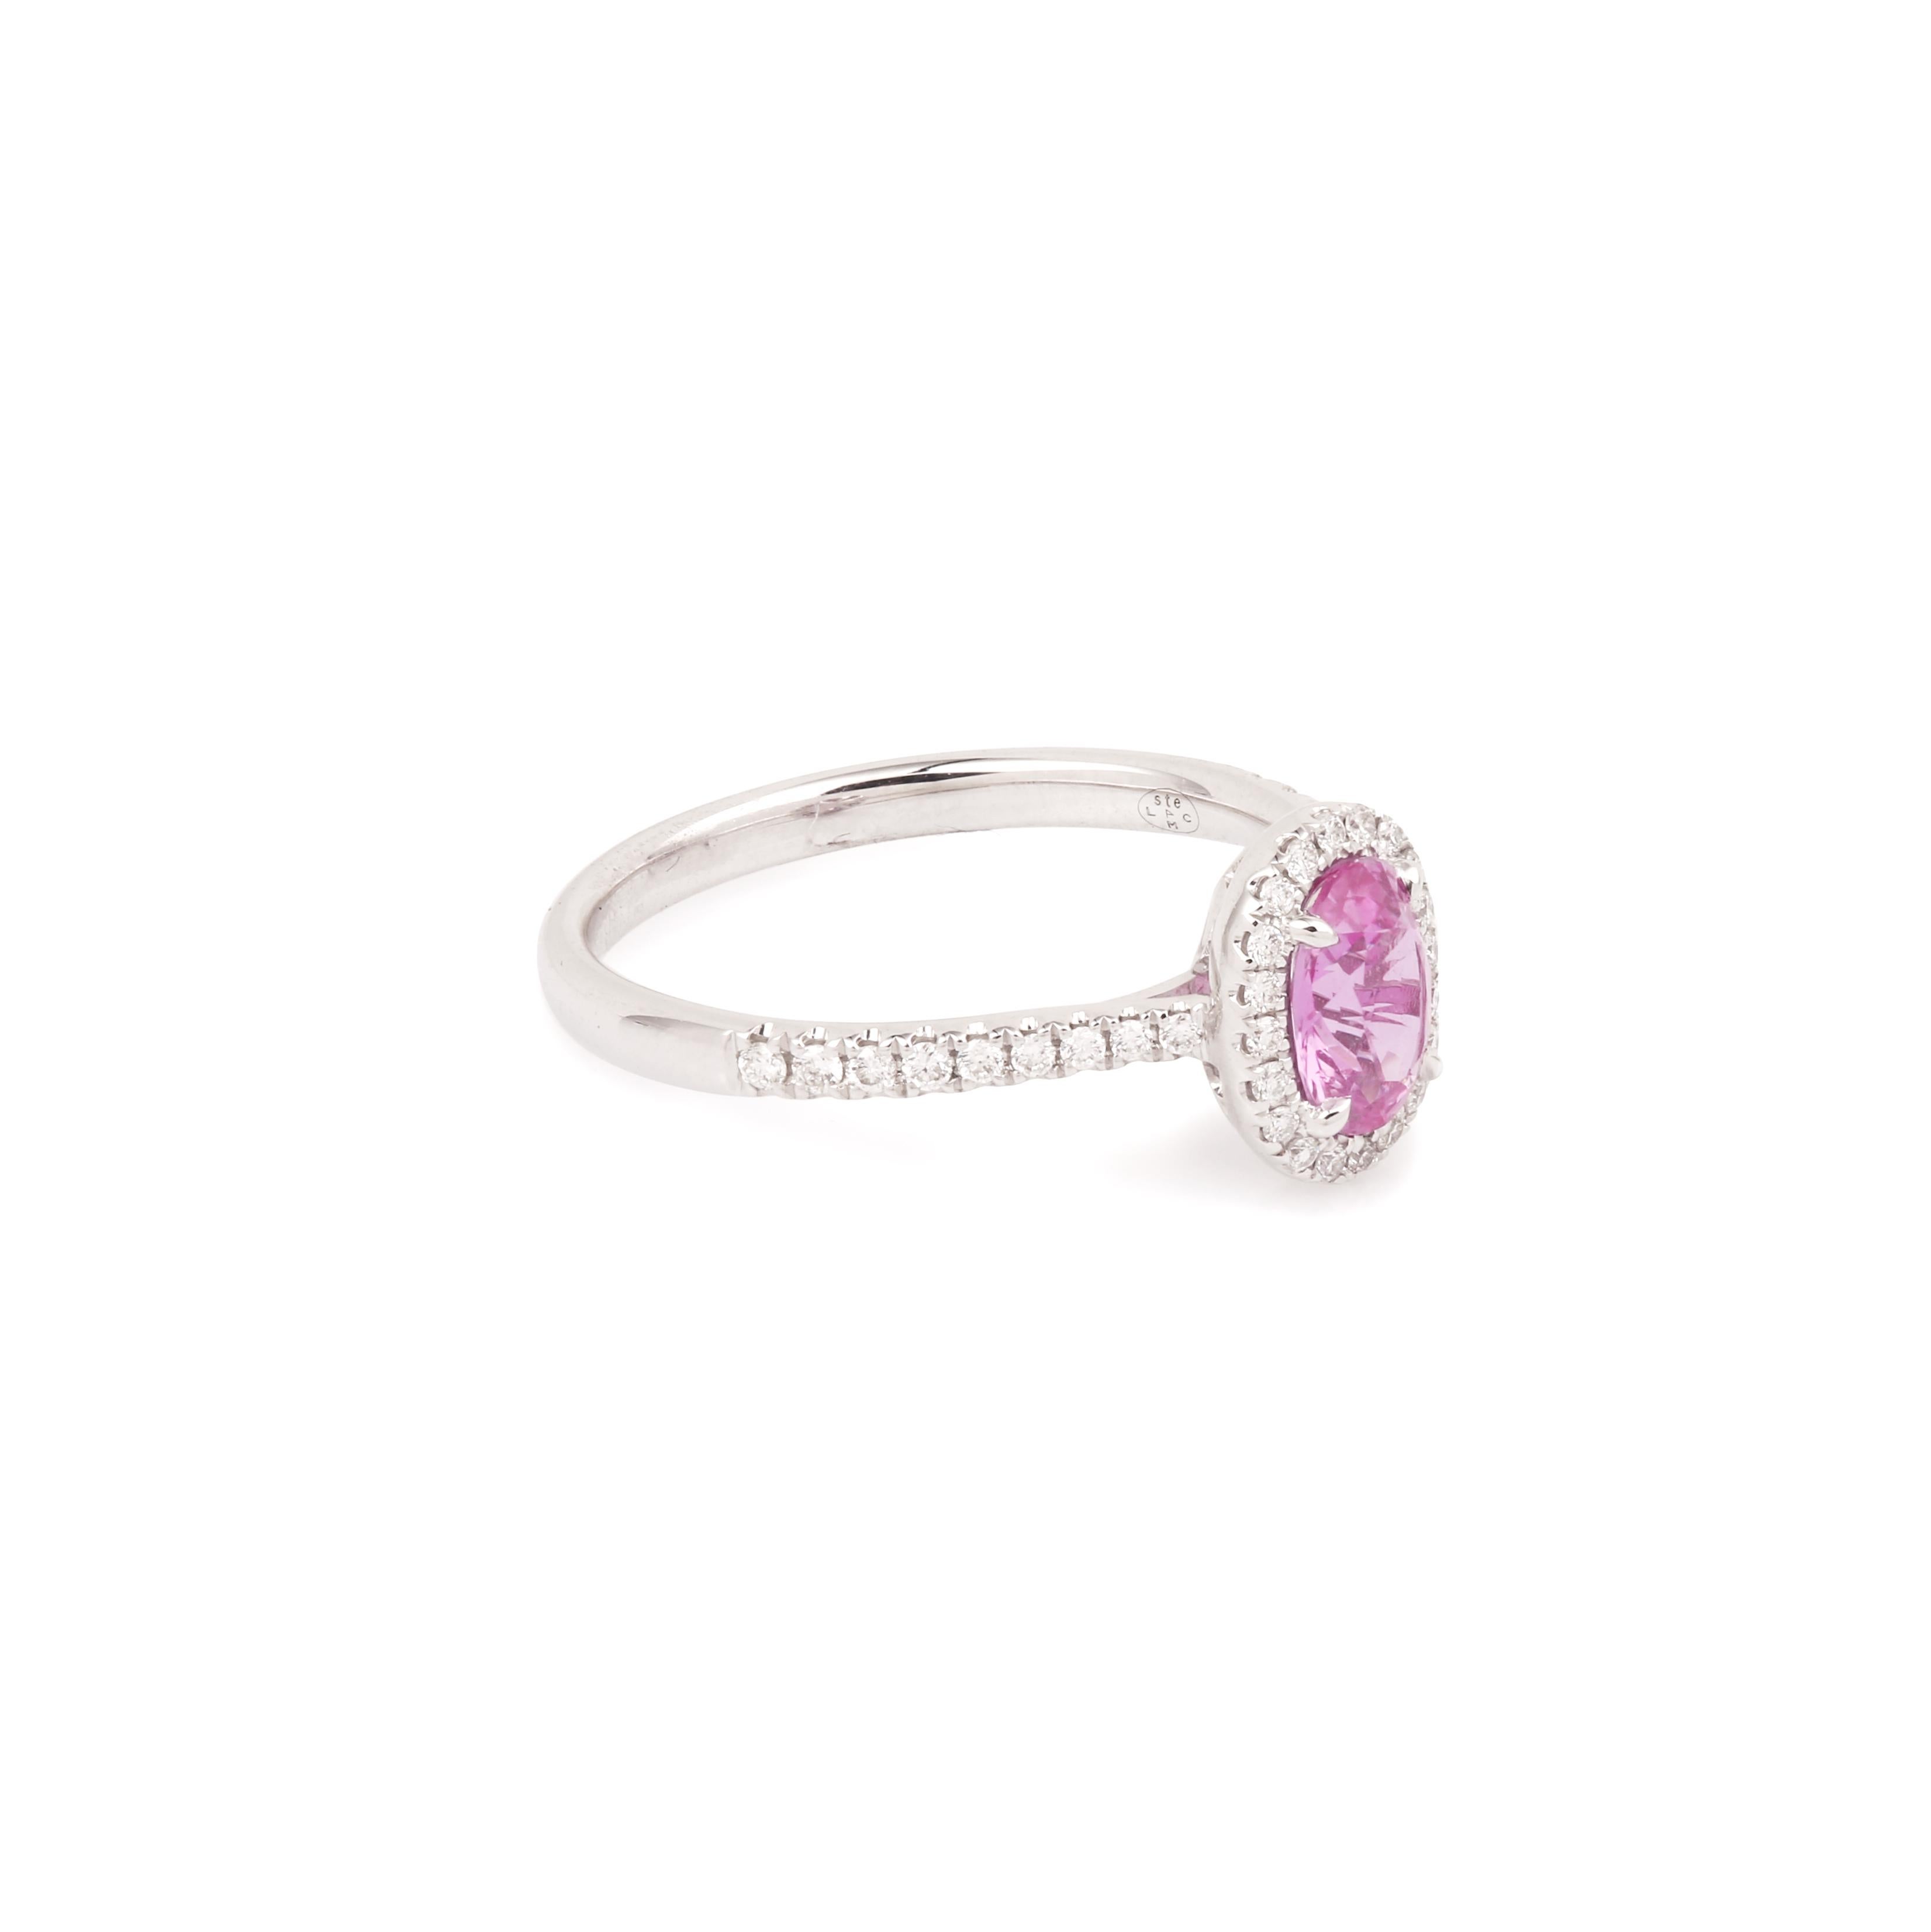 Wunderschöner Pompadour-Ring aus Weißgold mit einem ovalen rosa Saphir in einer Diamantfassung.

Für diejenigen unter Ihnen, die ein wenig Originalität und eine Alternative zur blauen Farbe suchen, warum lassen Sie sich nicht von einem hübschen rosa